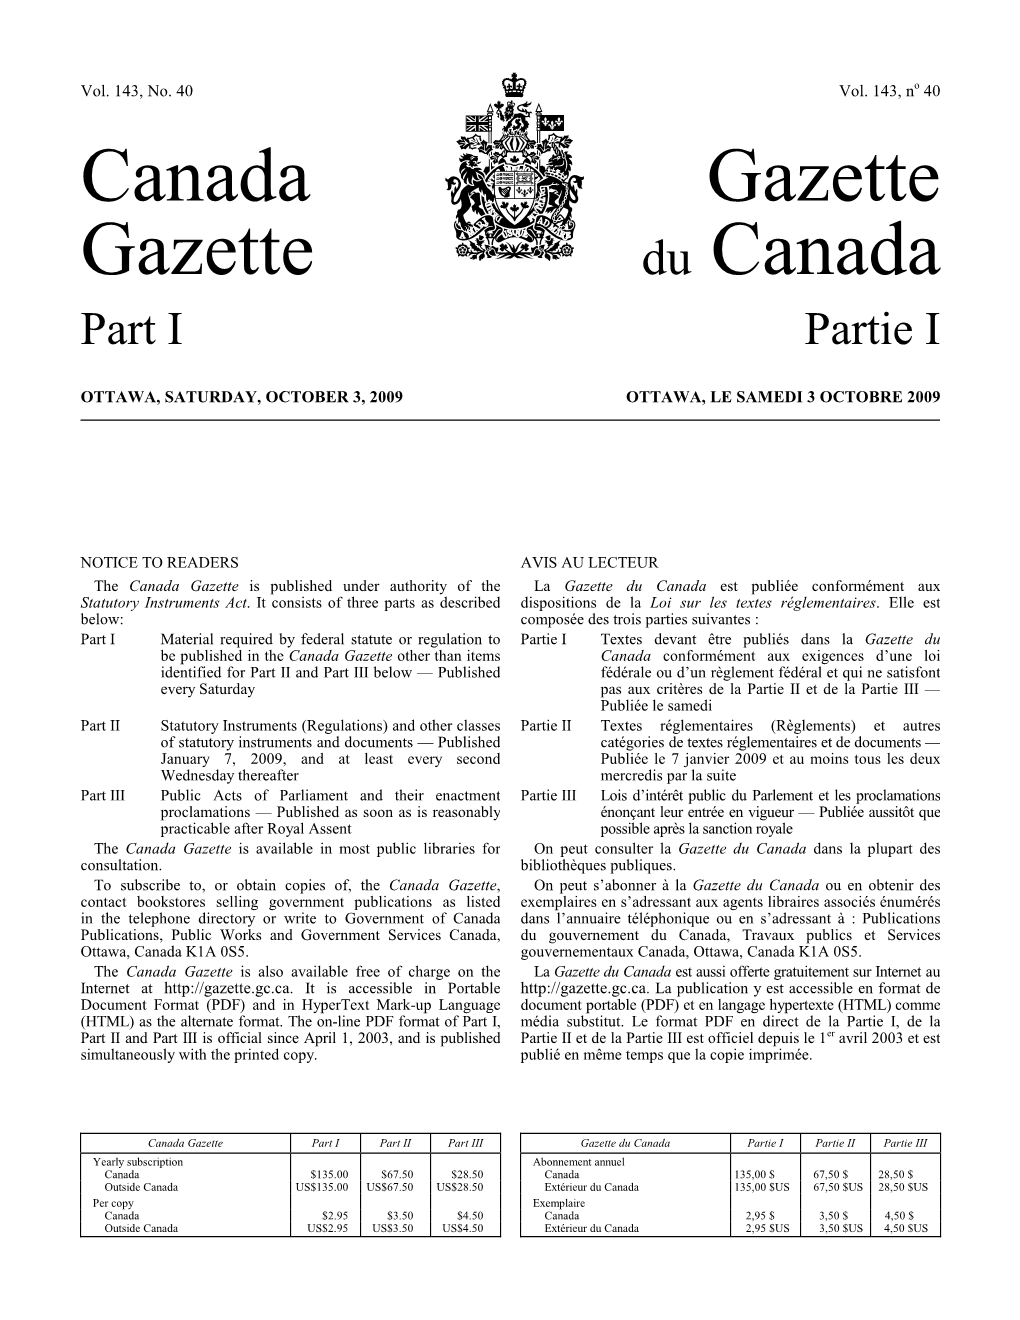 Loi Canadienne Sur La Protection De L'environnement (1999)